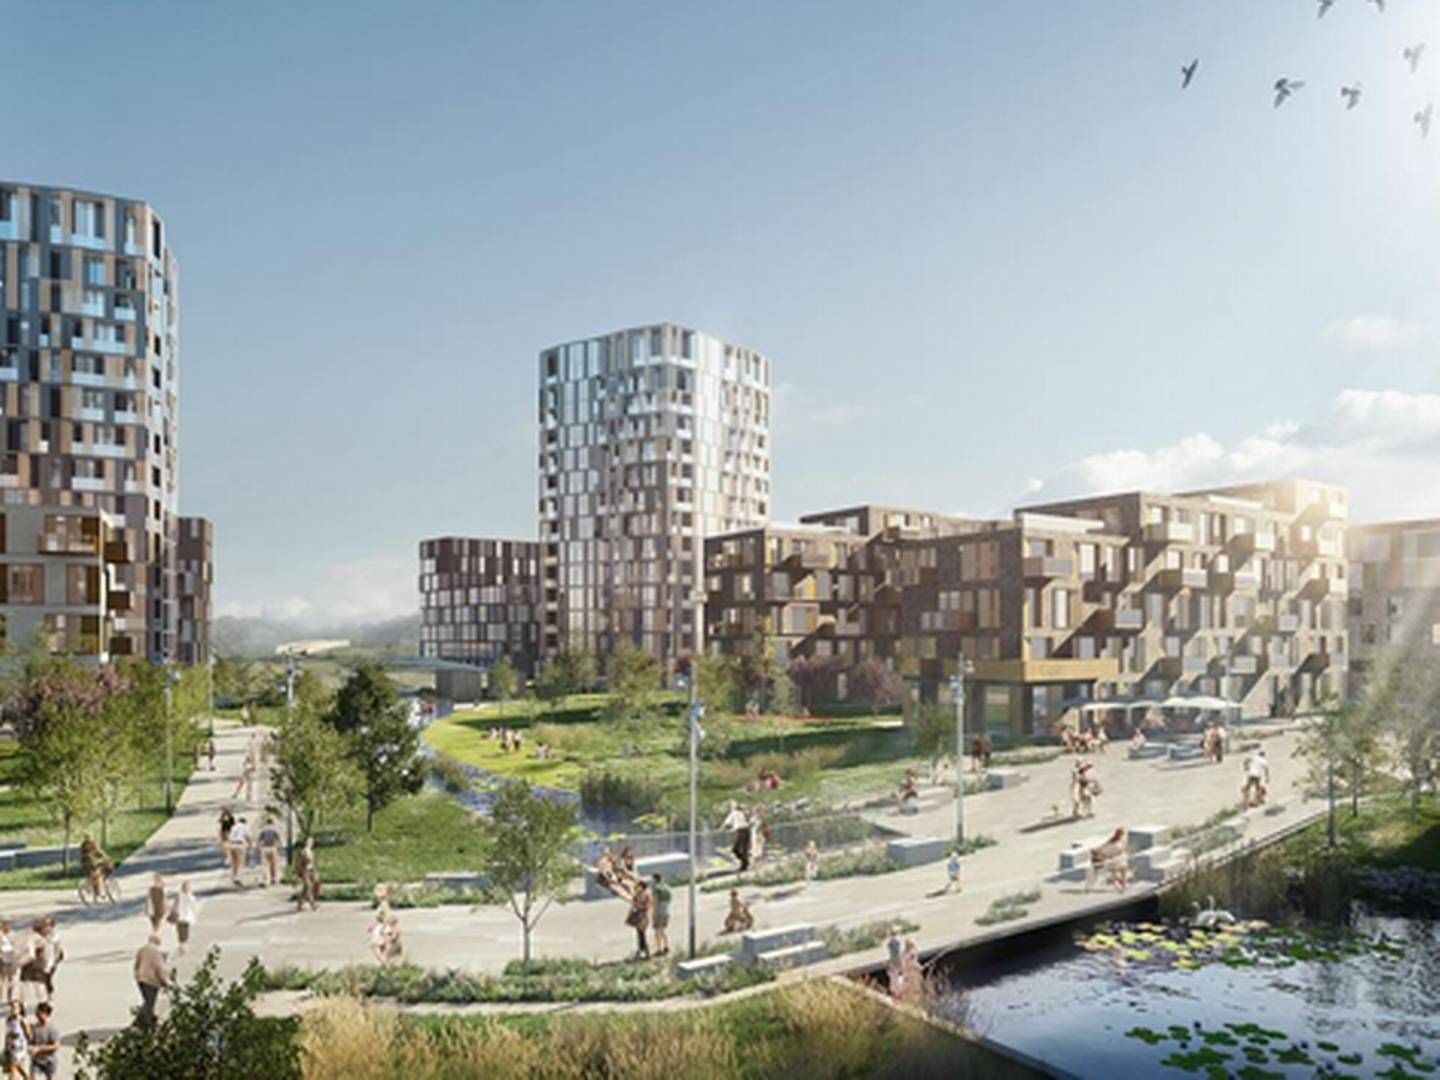 Den nye bvdel Frederiksbro kommer til at udvide Hillerød med 10 pct., når M. Goldschmidt Holding opfører 1300 boliger på Møllebrogrunden centralt i byen. | Foto: PR-illustration